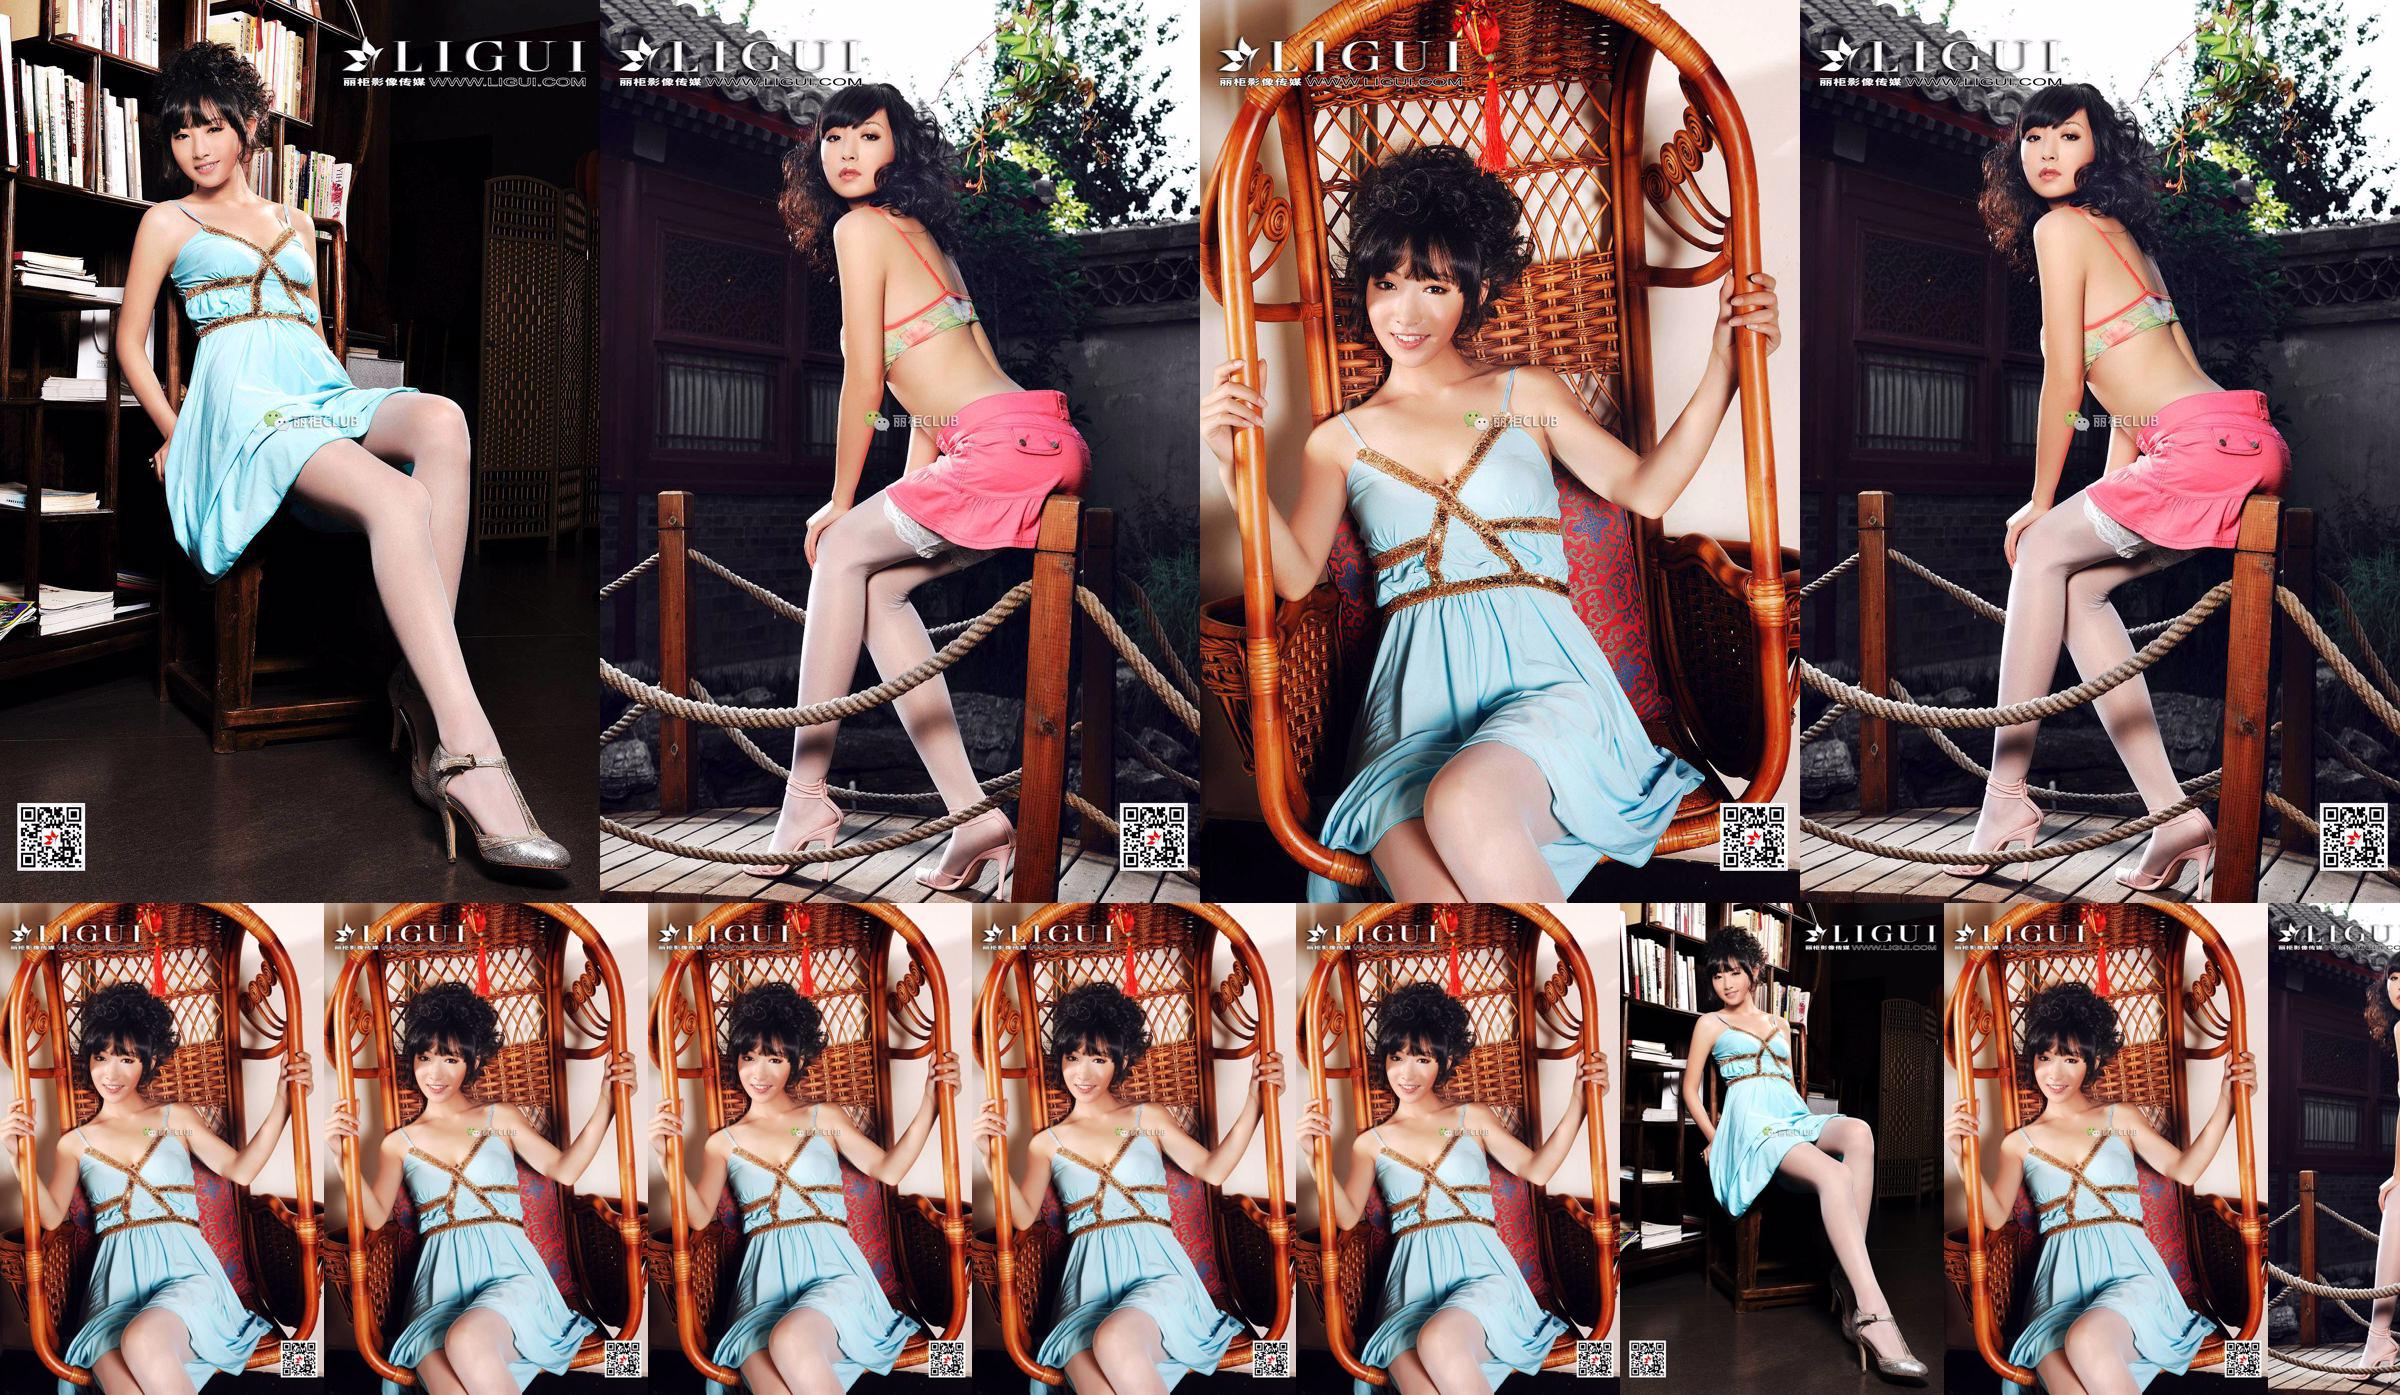 นางแบบขา Liu Yao "Classical Beauty Silk" [丽柜 LIGUI] Beautiful Legs in Stockings No.49a854 หน้า 40